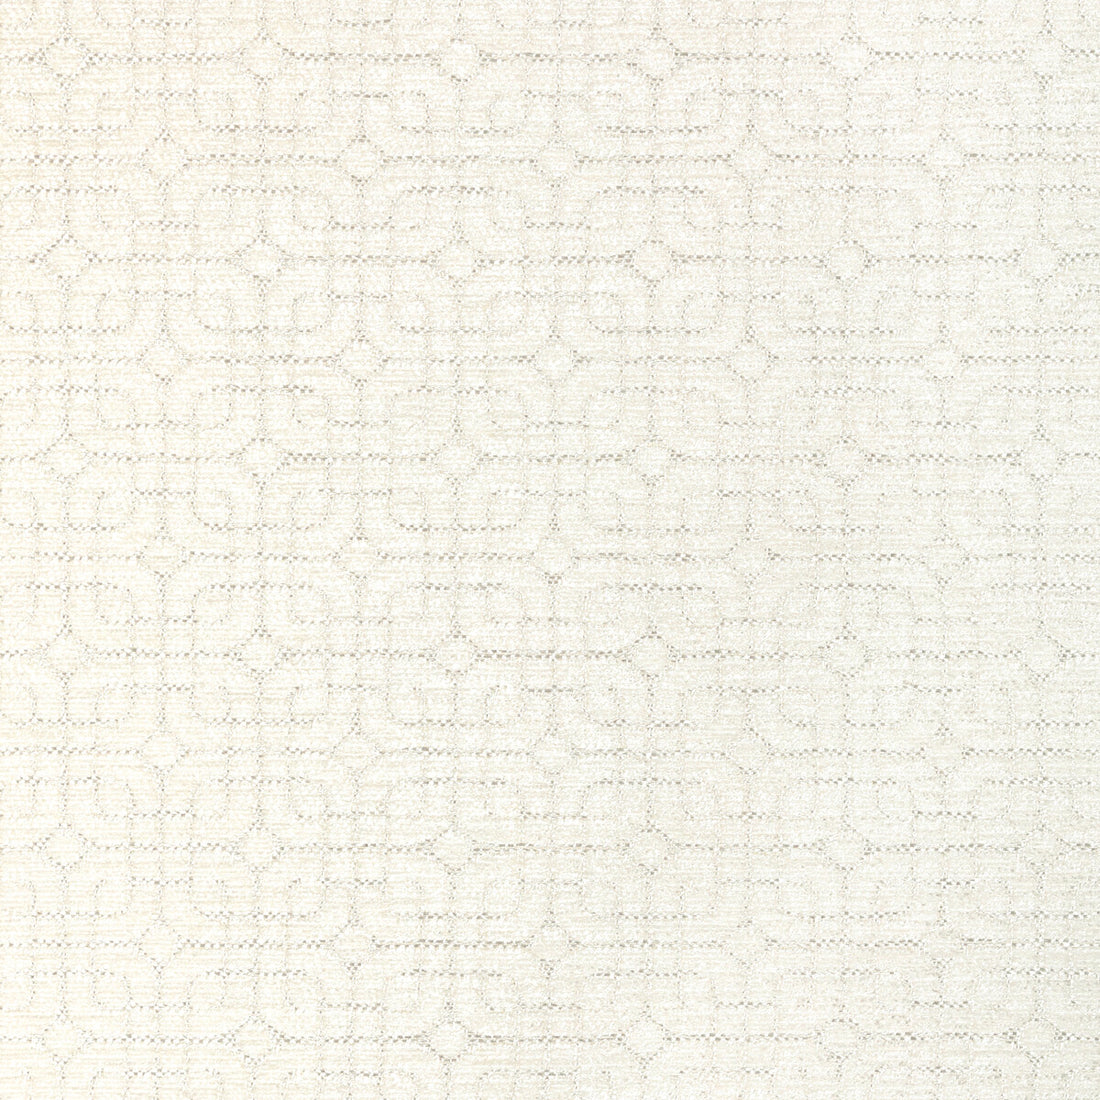 Kravet Basics fabric in 35998-1 color - pattern 35998.1.0 - by Kravet Basics